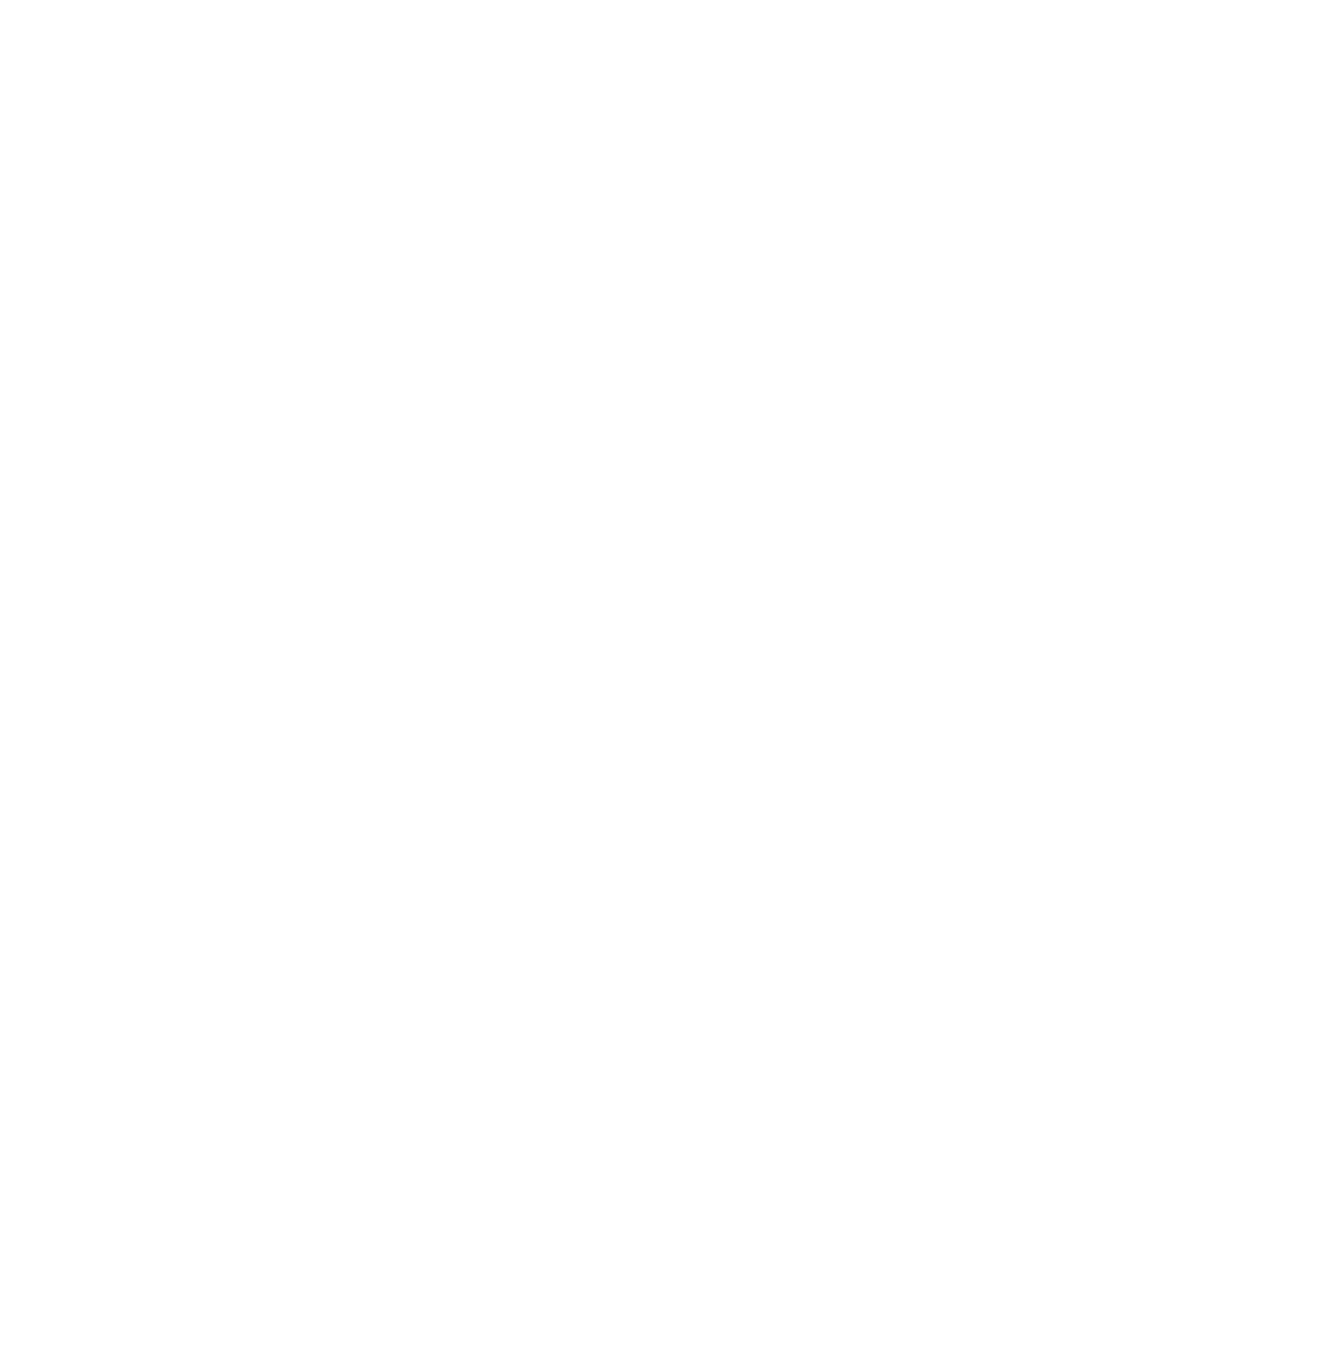 Marc Keeling